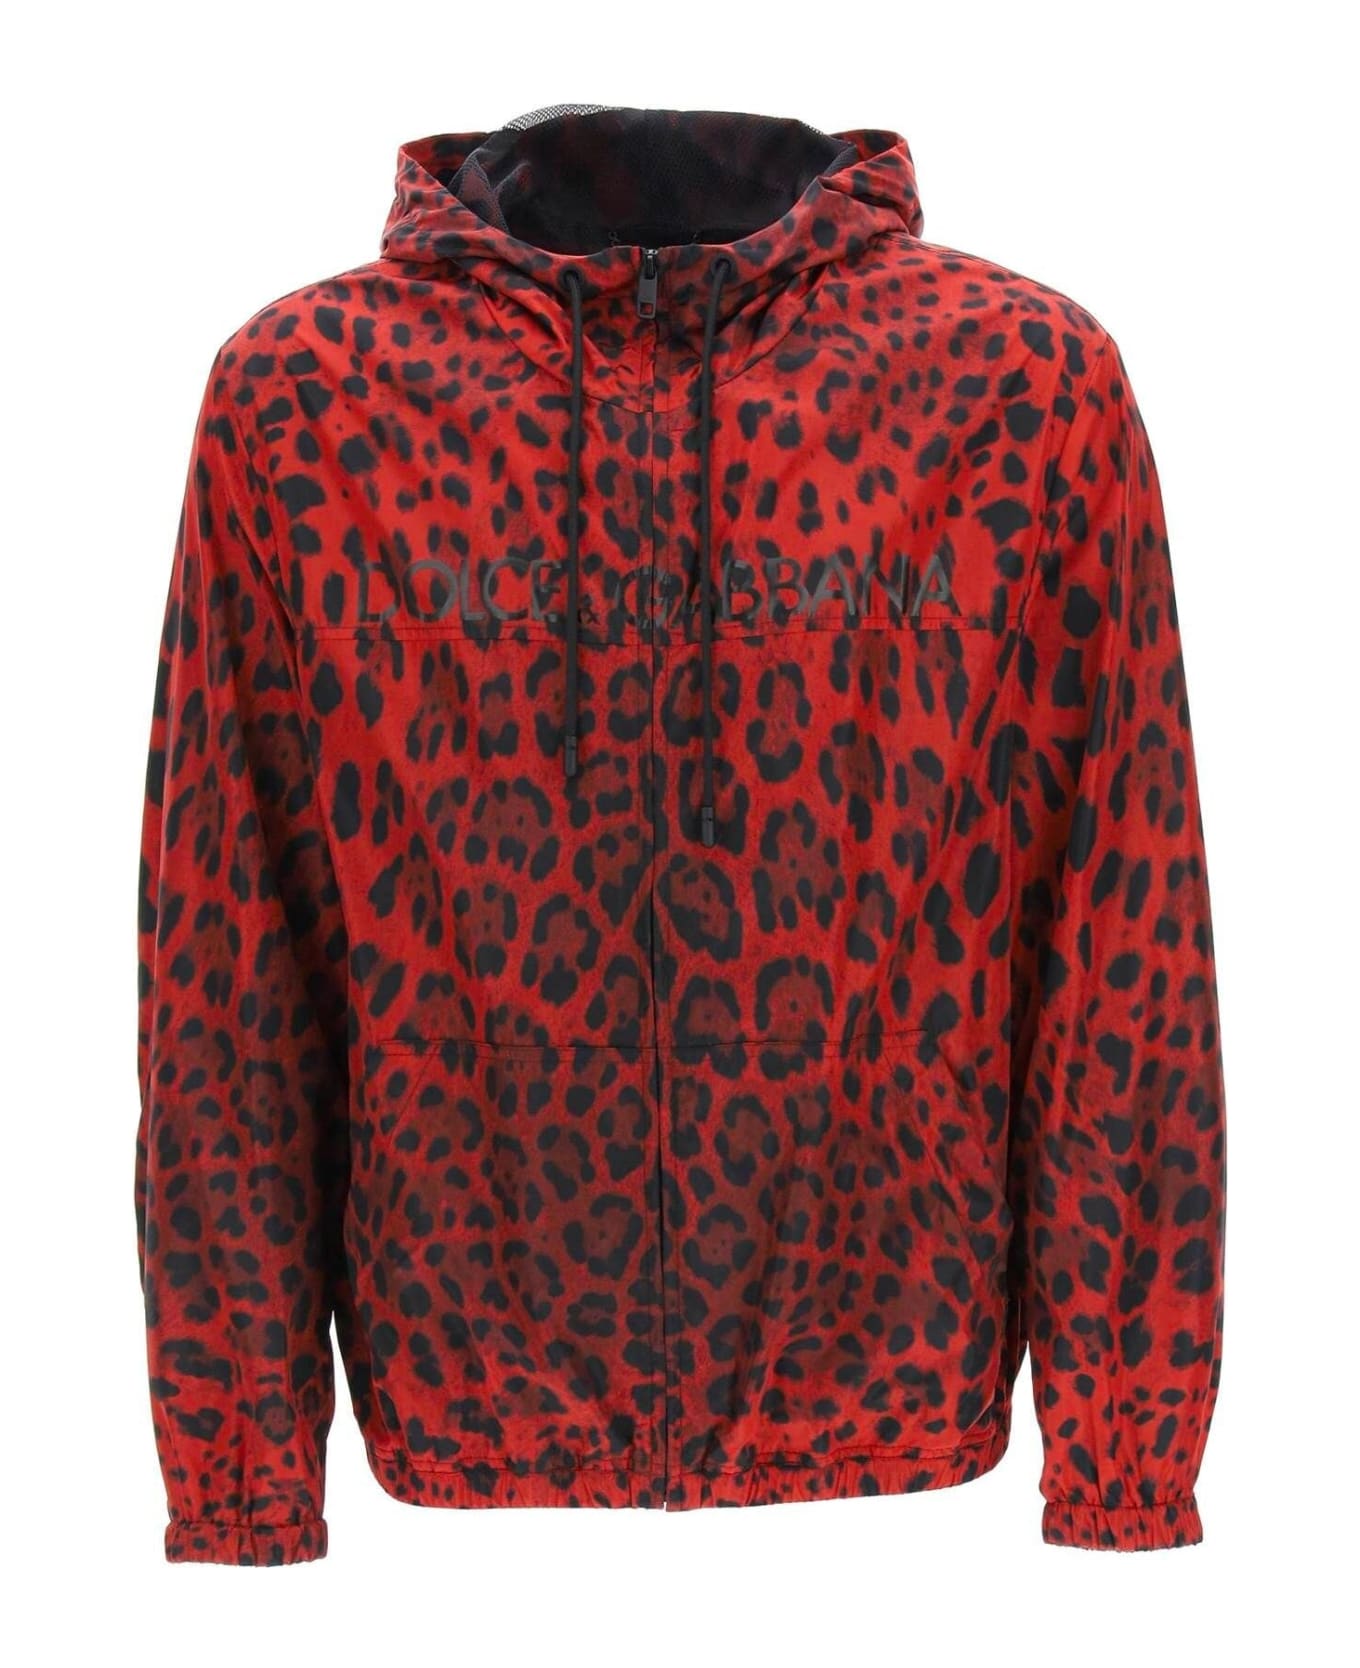 Dolce & Gabbana Windbreaker Jacket - Red